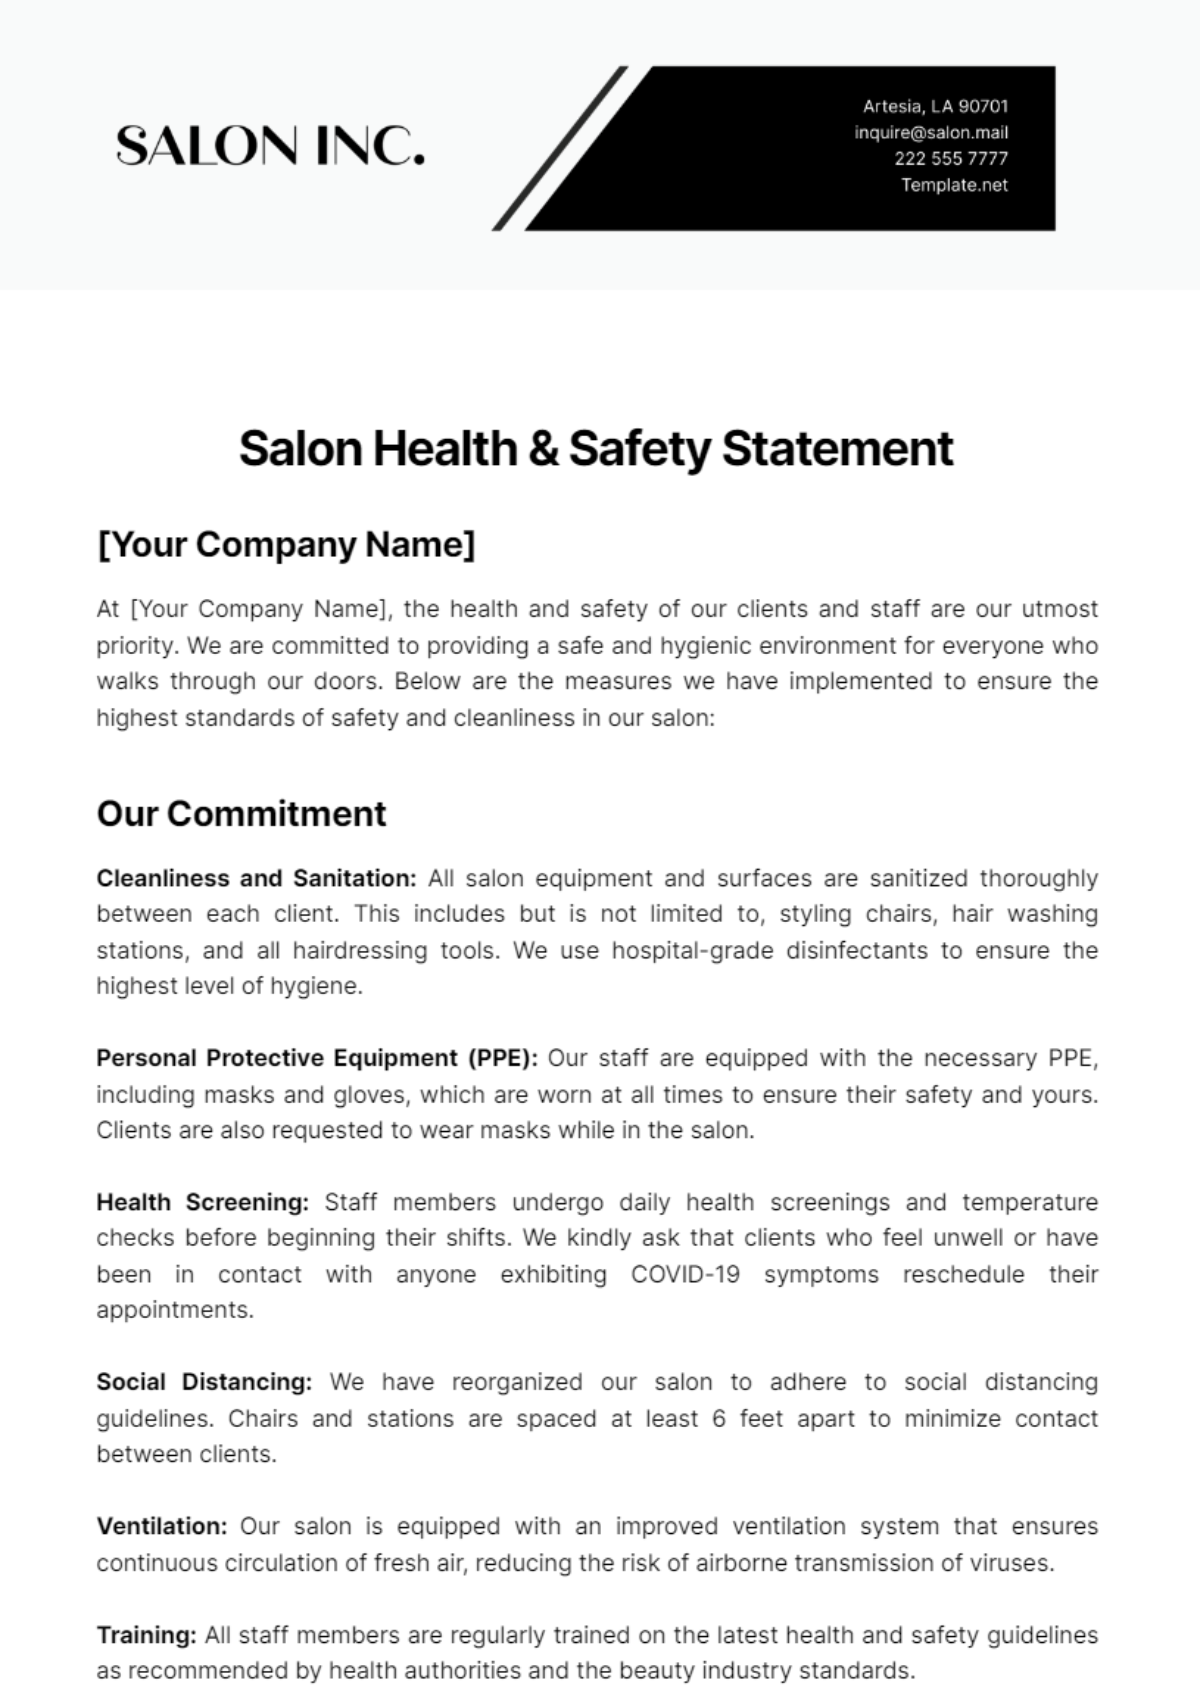 Salon Health & Safety Statement Template